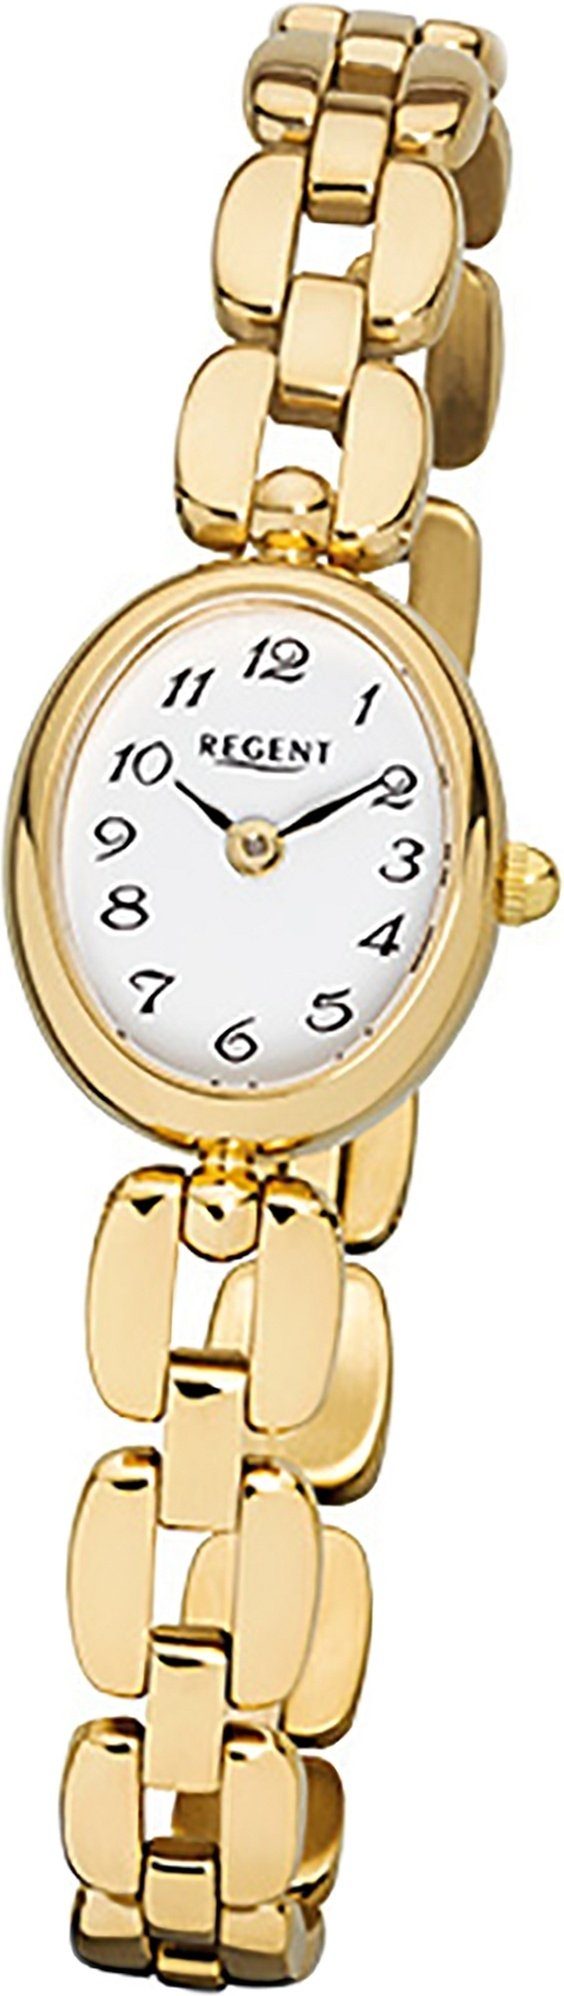 Damen F-968 Regent Quarzuhr, Damenuhr Regent Uhr Stahl mit ovales Edelstahl, goldarmband, ionenplattiert kl Quarzuhr Gehäuse,